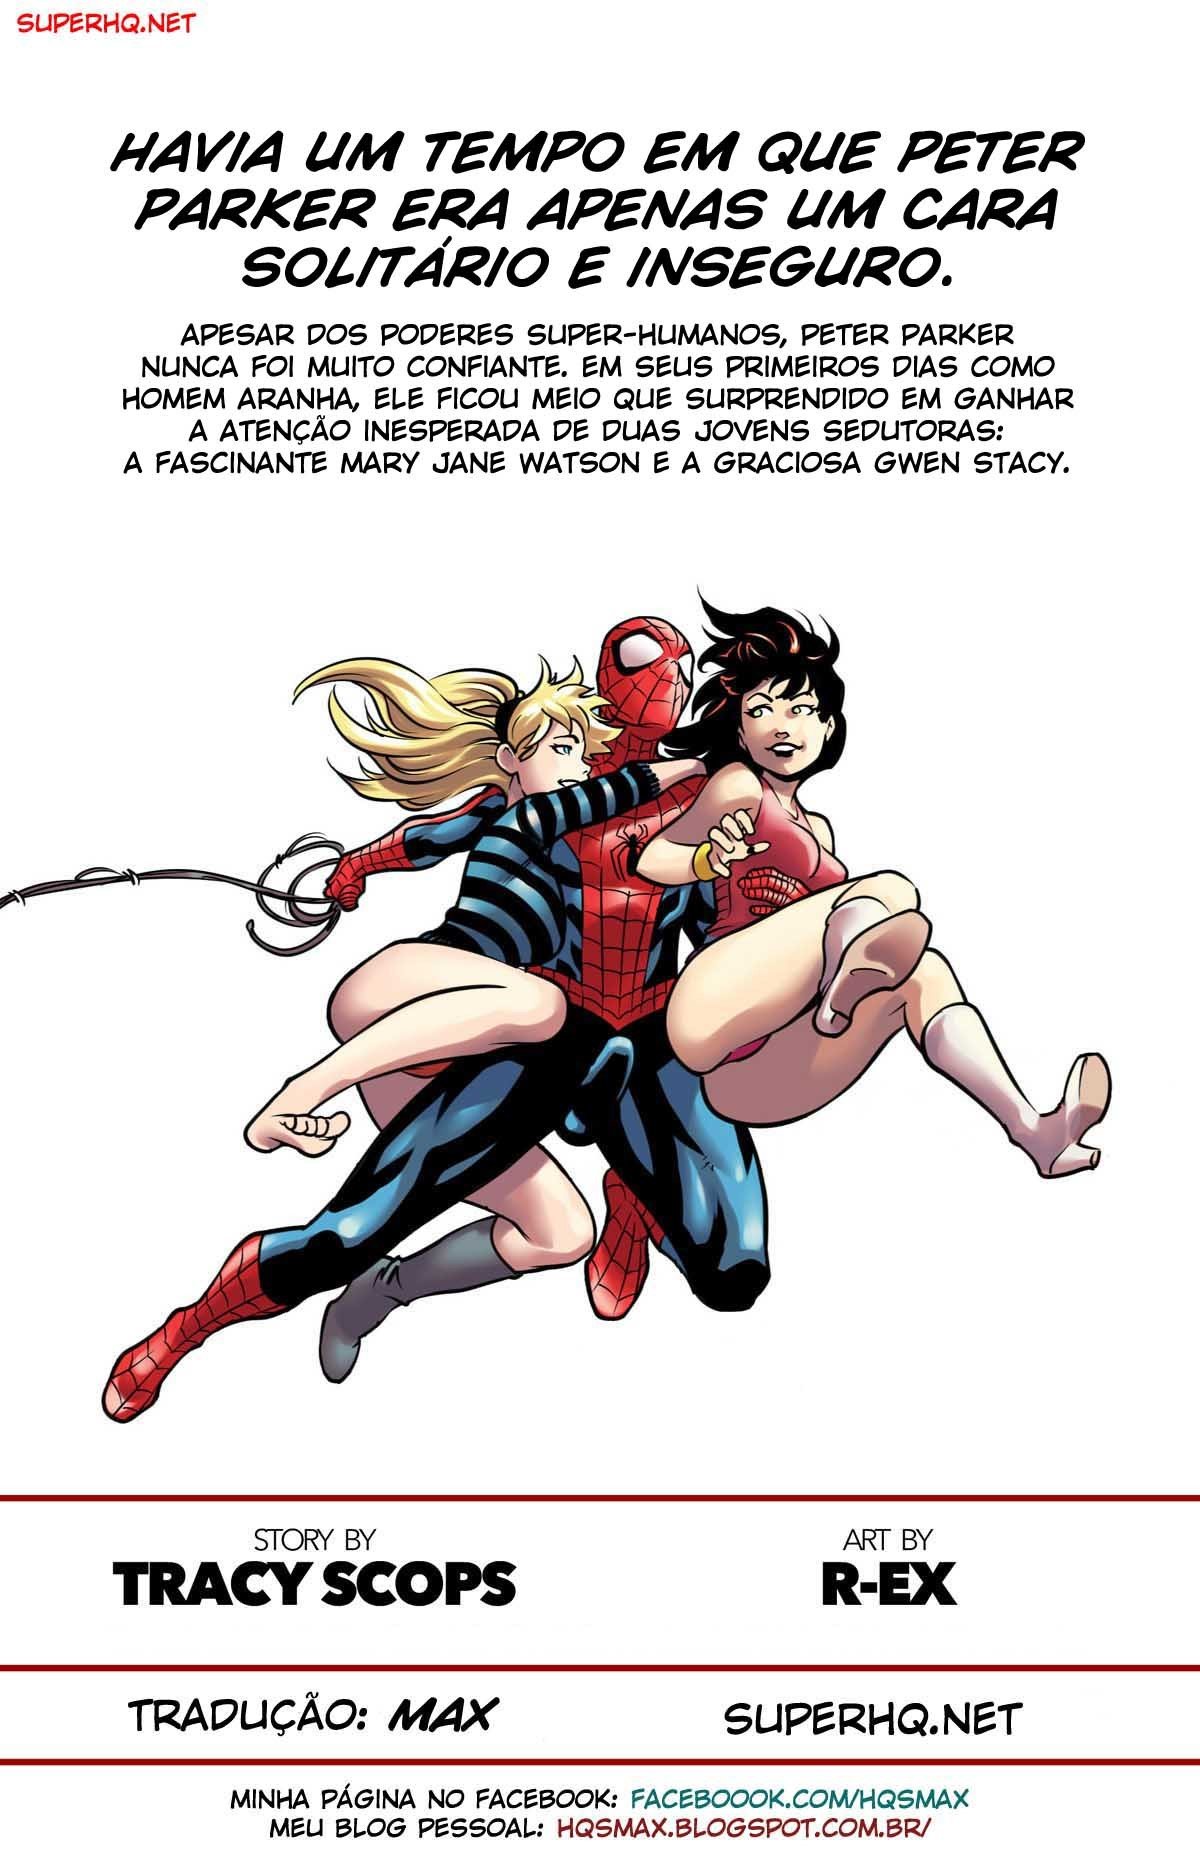 Homem Aranha no Dia dos Namorados (Marvel) - Foto 2